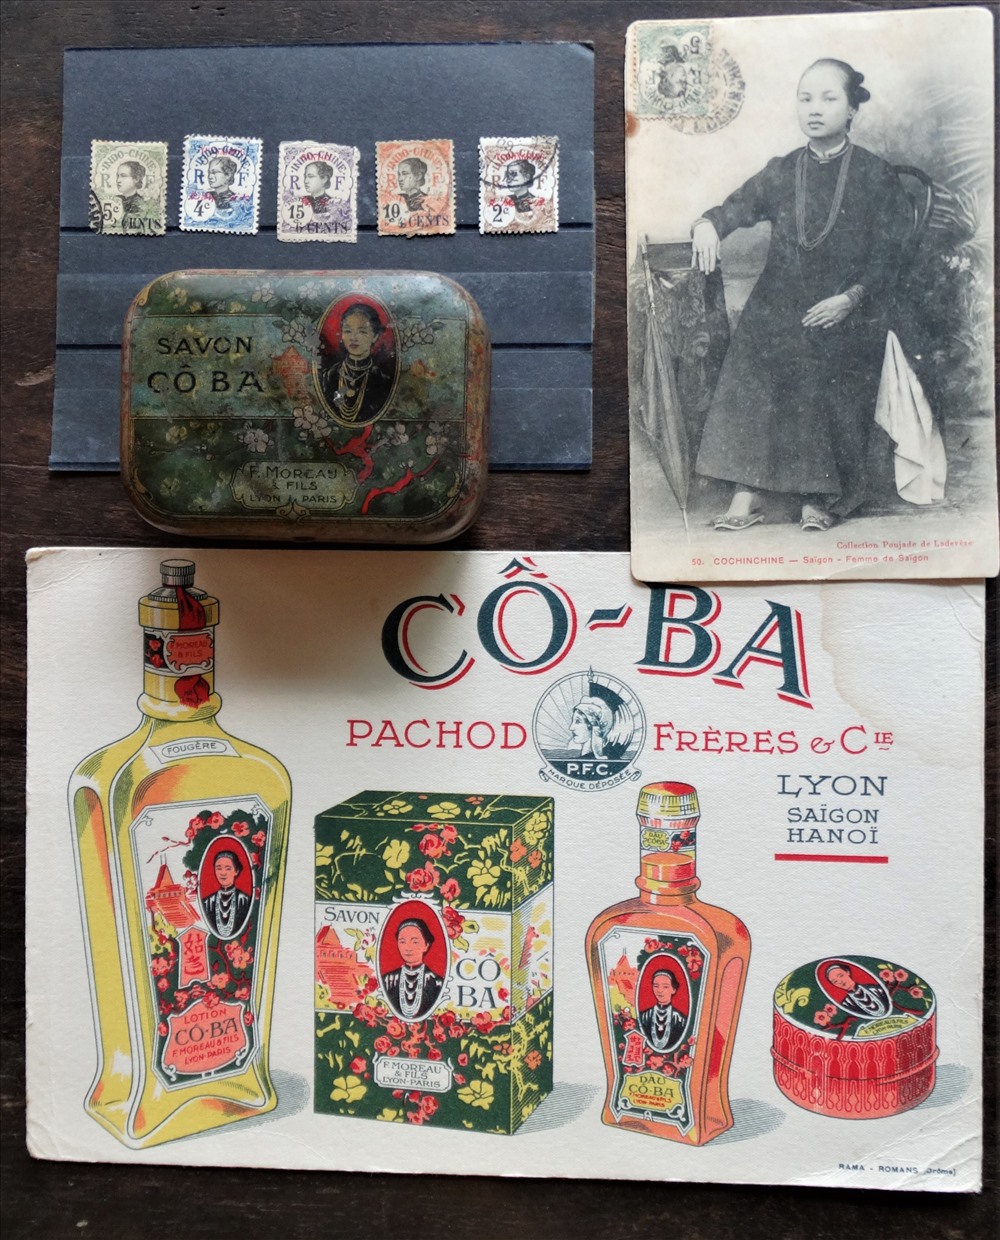 Chiếc hộp đựng xà bông Cô Ba cùng tờ quảng cáo của thương hiệu nổi tiếng một thời. Sản phẩm này ra đời từ thời Pháp thuộc, góp phần cạnh tranh với các mặt hàng ngoại nhập lúc ấy. Sau năm 1954, loại xà bông này chiếm thị phần rất lớn ở miền Nam.